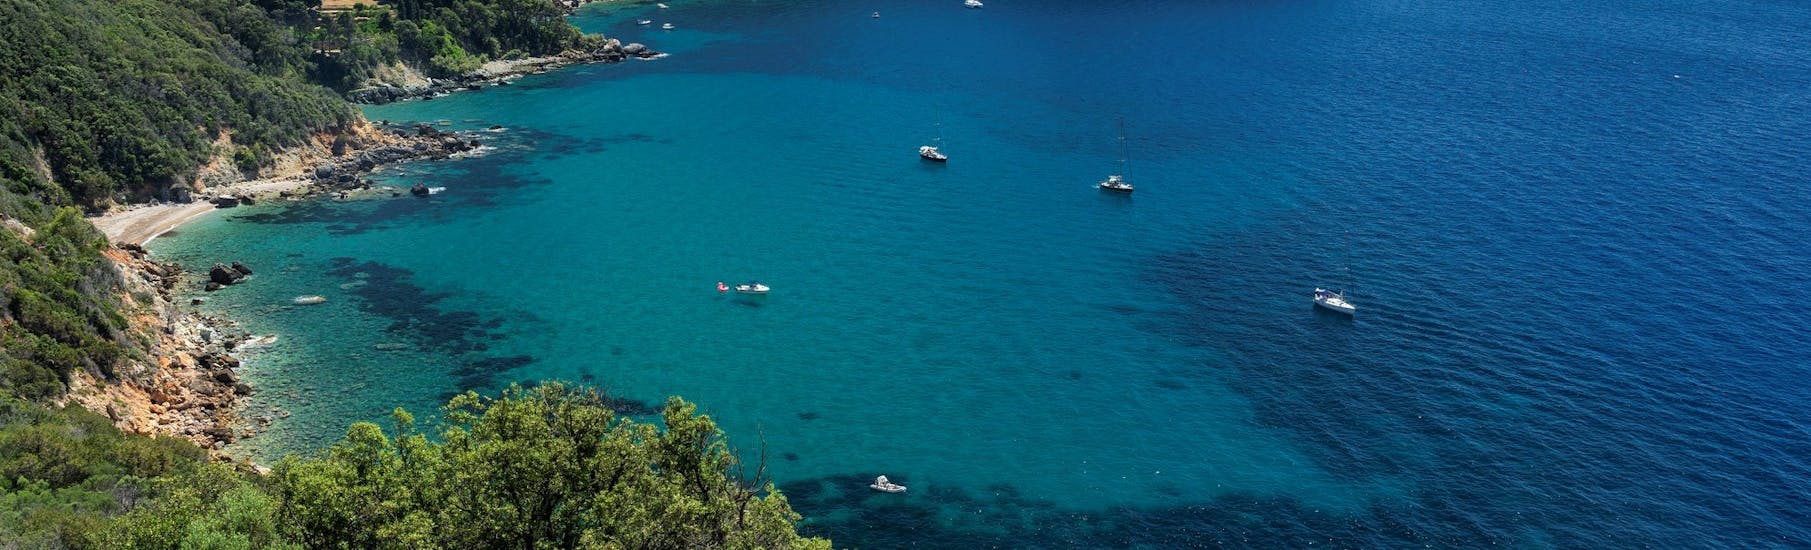 Gita privata in barca all'Isola di Giannutri con pranzo e snorkeling.